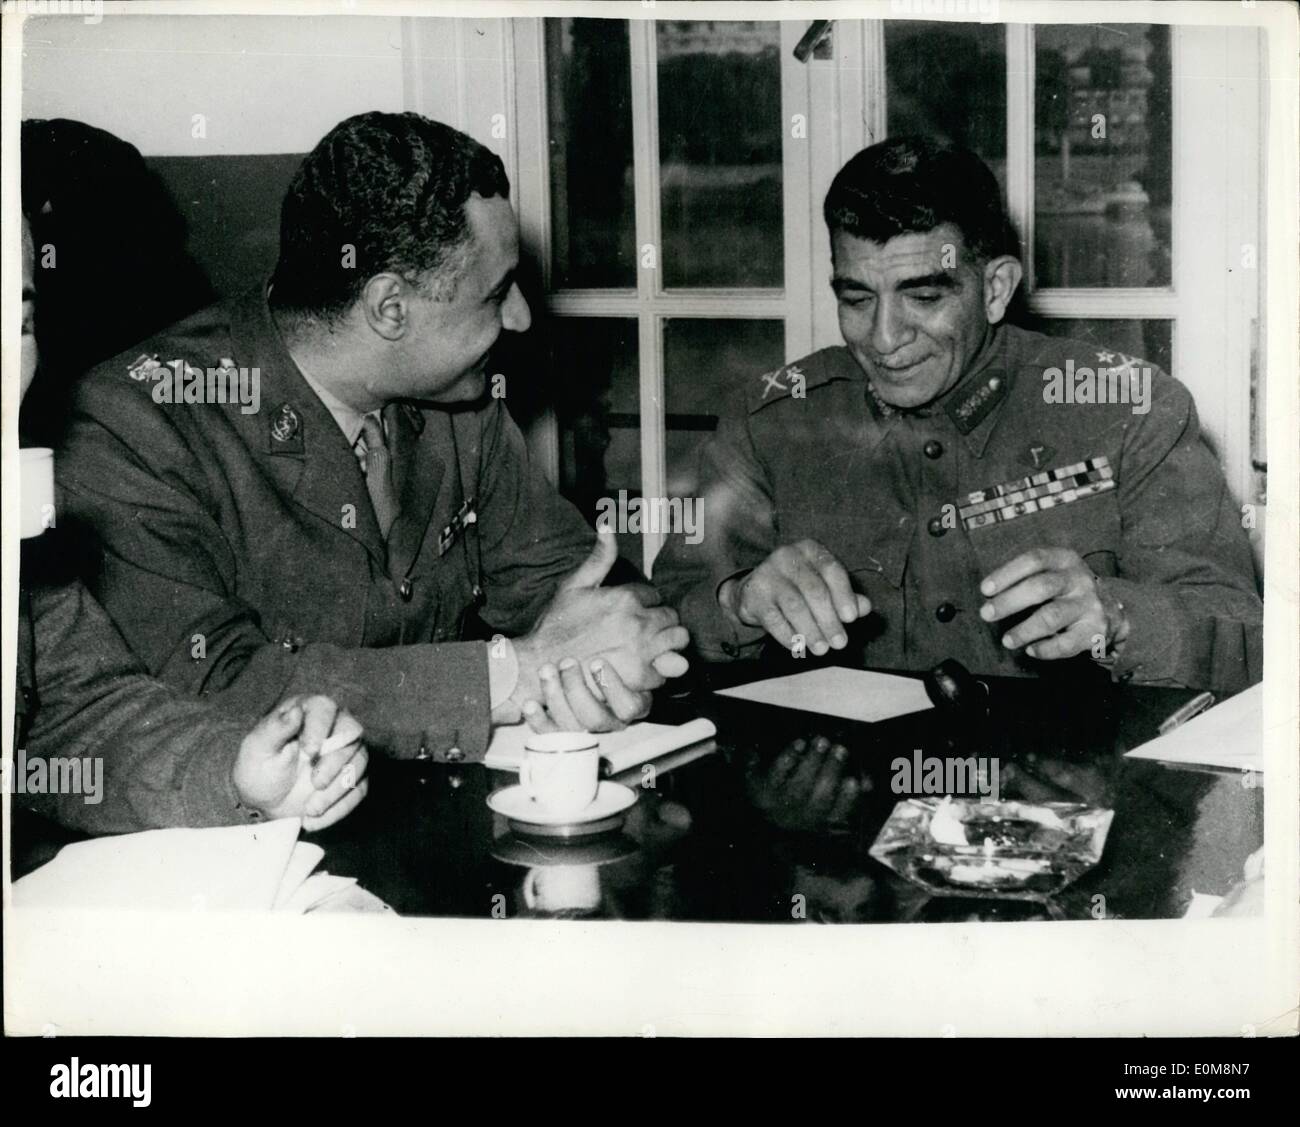 02. Februar 1954 - Oberst Nasser übernimmt in Ägypten. Neguib und~sind Nachfolger bei der jüngsten Sitzung.: General Neguib, dessen Amtsentlassung des ägyptischen Präsidenten und Premierministers vor zwei Tagen angekündigt wurde - ist noch in seinem Haus in kairo unter aremd-Garde. Sein Amt als Premierminister wurde von Lieut übernommen. Col. Gaml Abdel Nasser. Foto zeigt Ex-Präsident Mohammed Neguid im Gespräch mit seiner Lieut. Col. gamal Abdel Nasser - bei der letzten Sitzung des Revolutionären Rates, bei der Neguib vor vier Tagen den Vorsitz hatte. Stockfoto